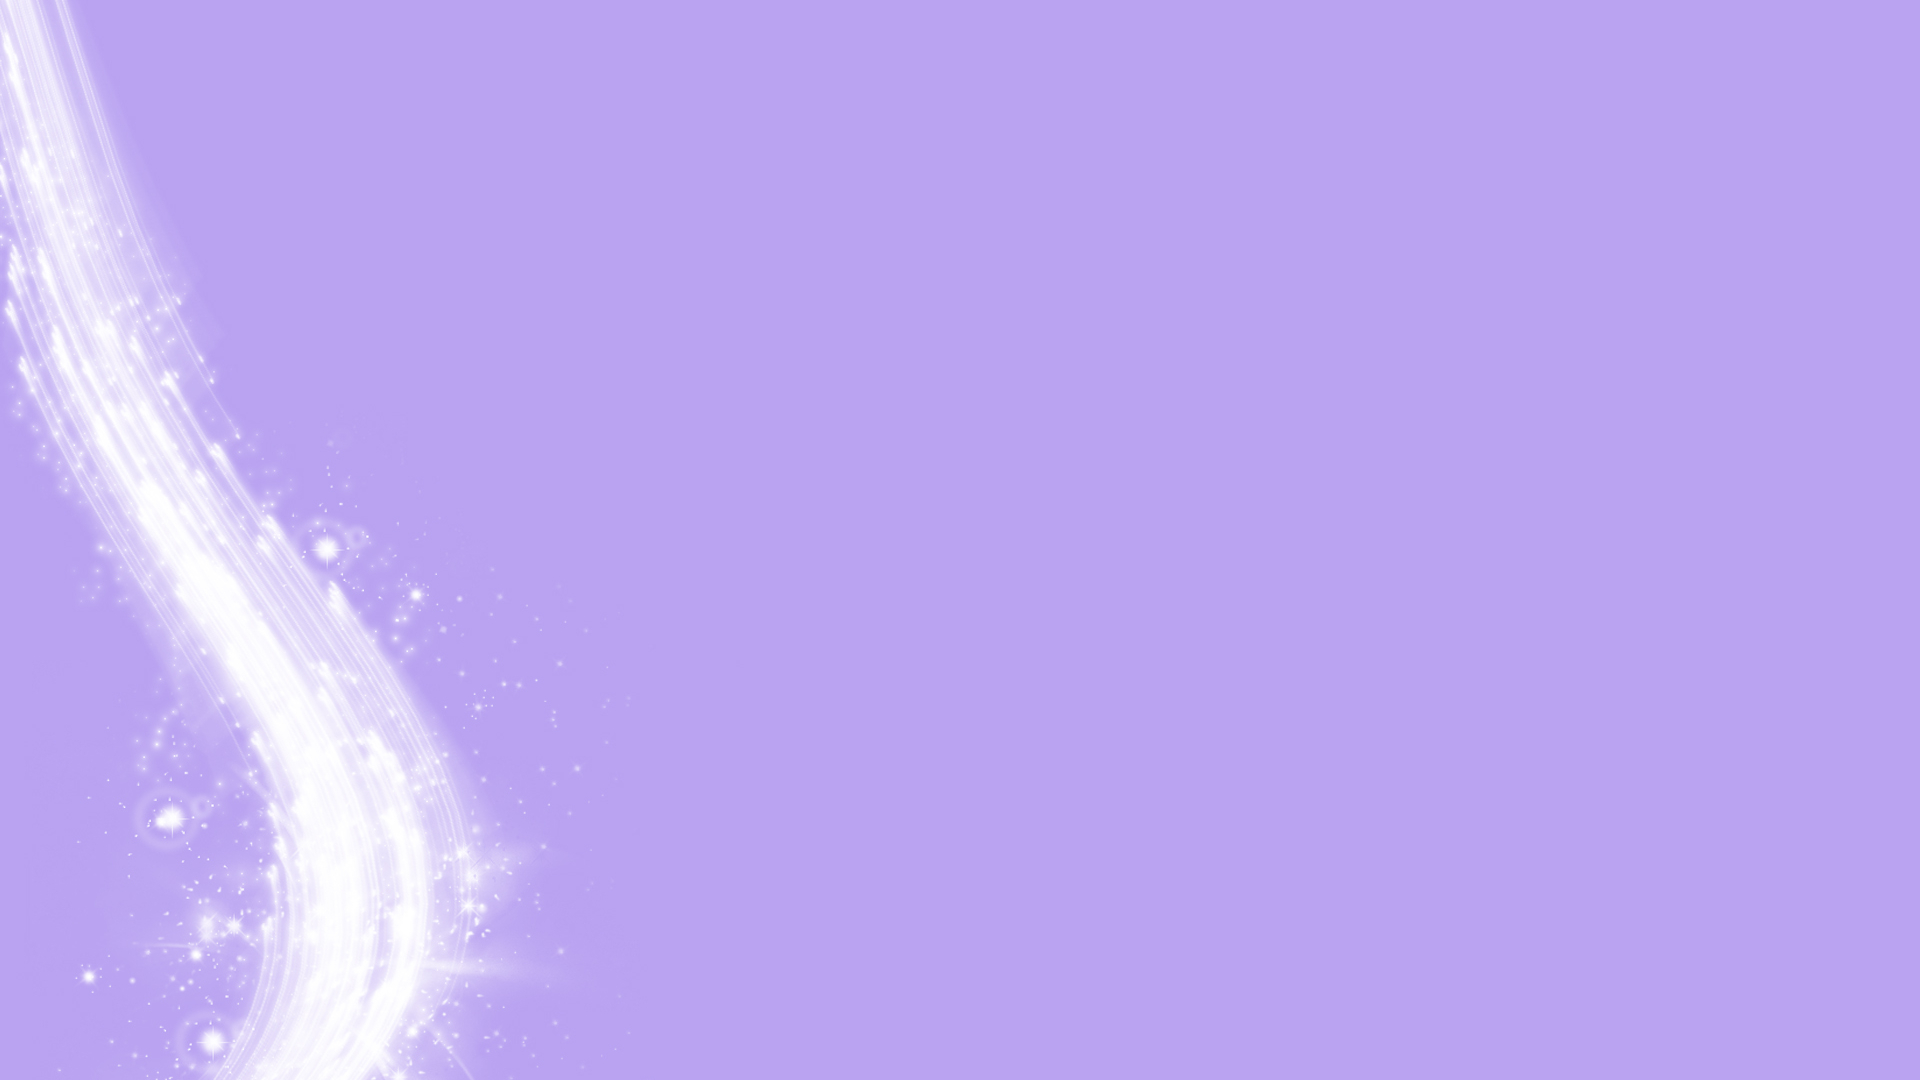 Free download Image Lilac Color Wallpaper Desktop Download [1920x1200] for your Desktop, Mobile & Tablet. Explore Free Lilac Wallpaper Background. Lilac Flowers Wallpaper, Wallpaper for Desktop Lilacs